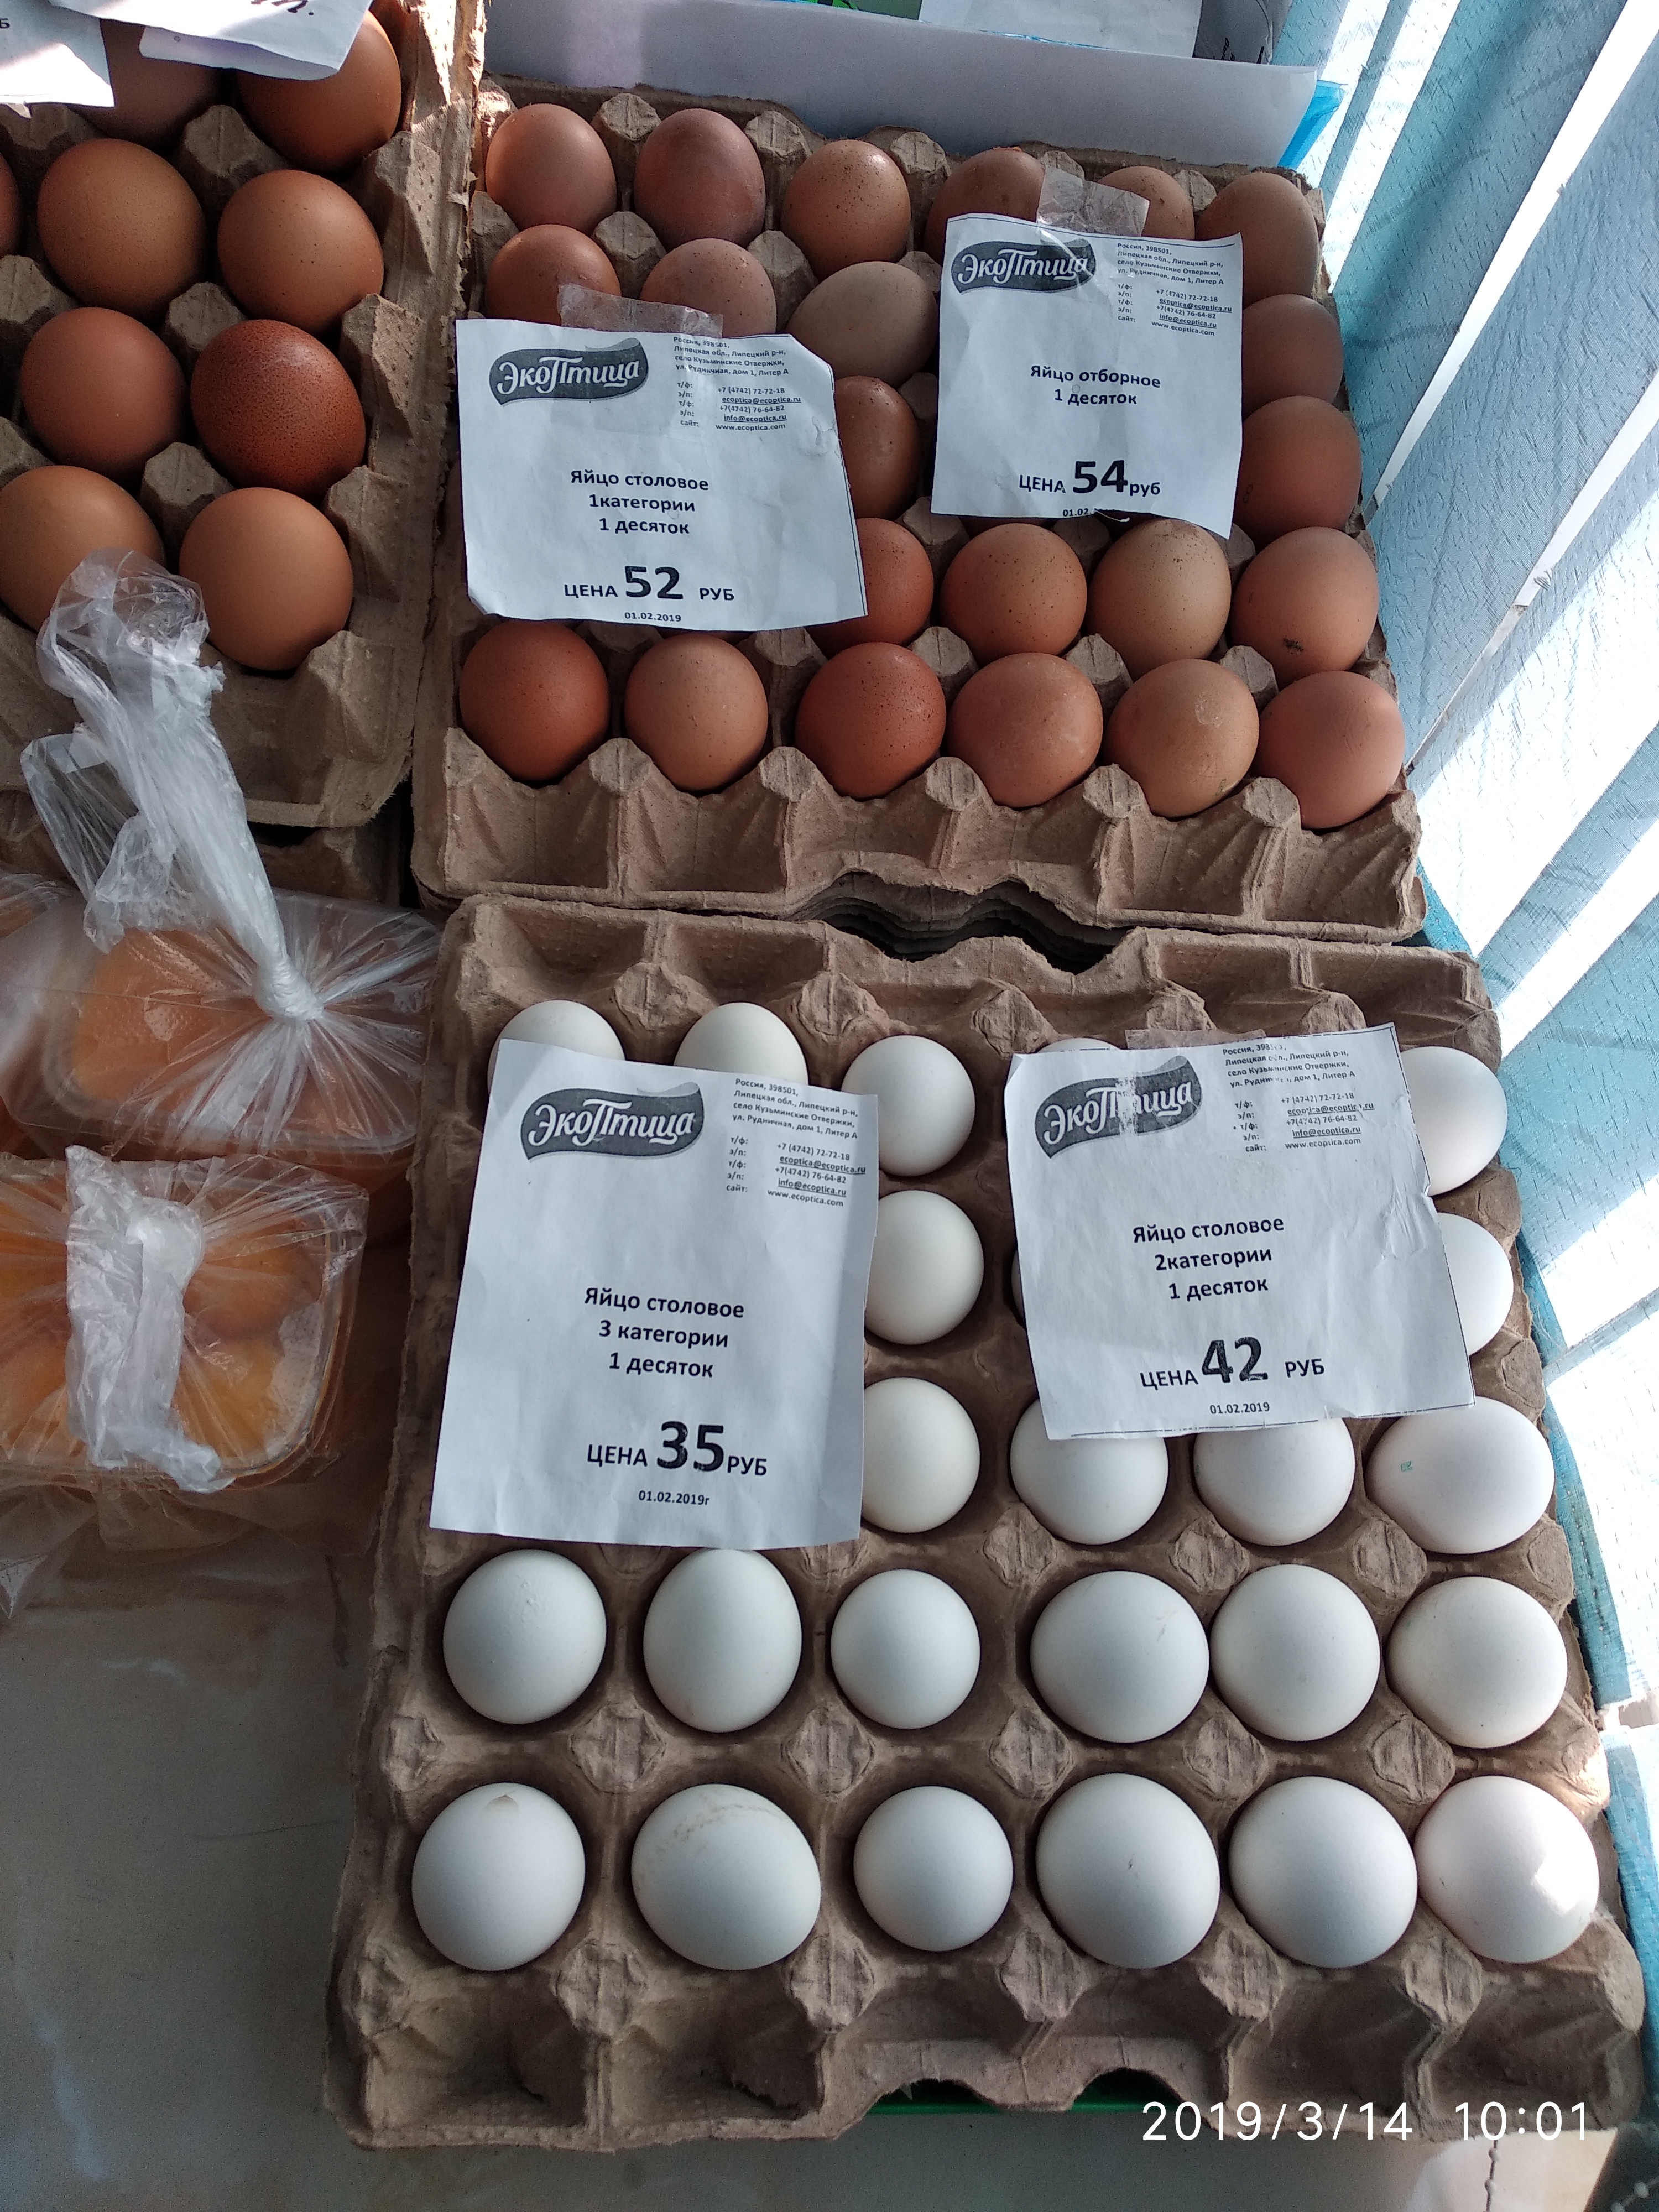 Сколько стоит яйцо сегодня. Яйца в магазине. Почем яйца в магазине. Десяток яиц. Яйца цена.